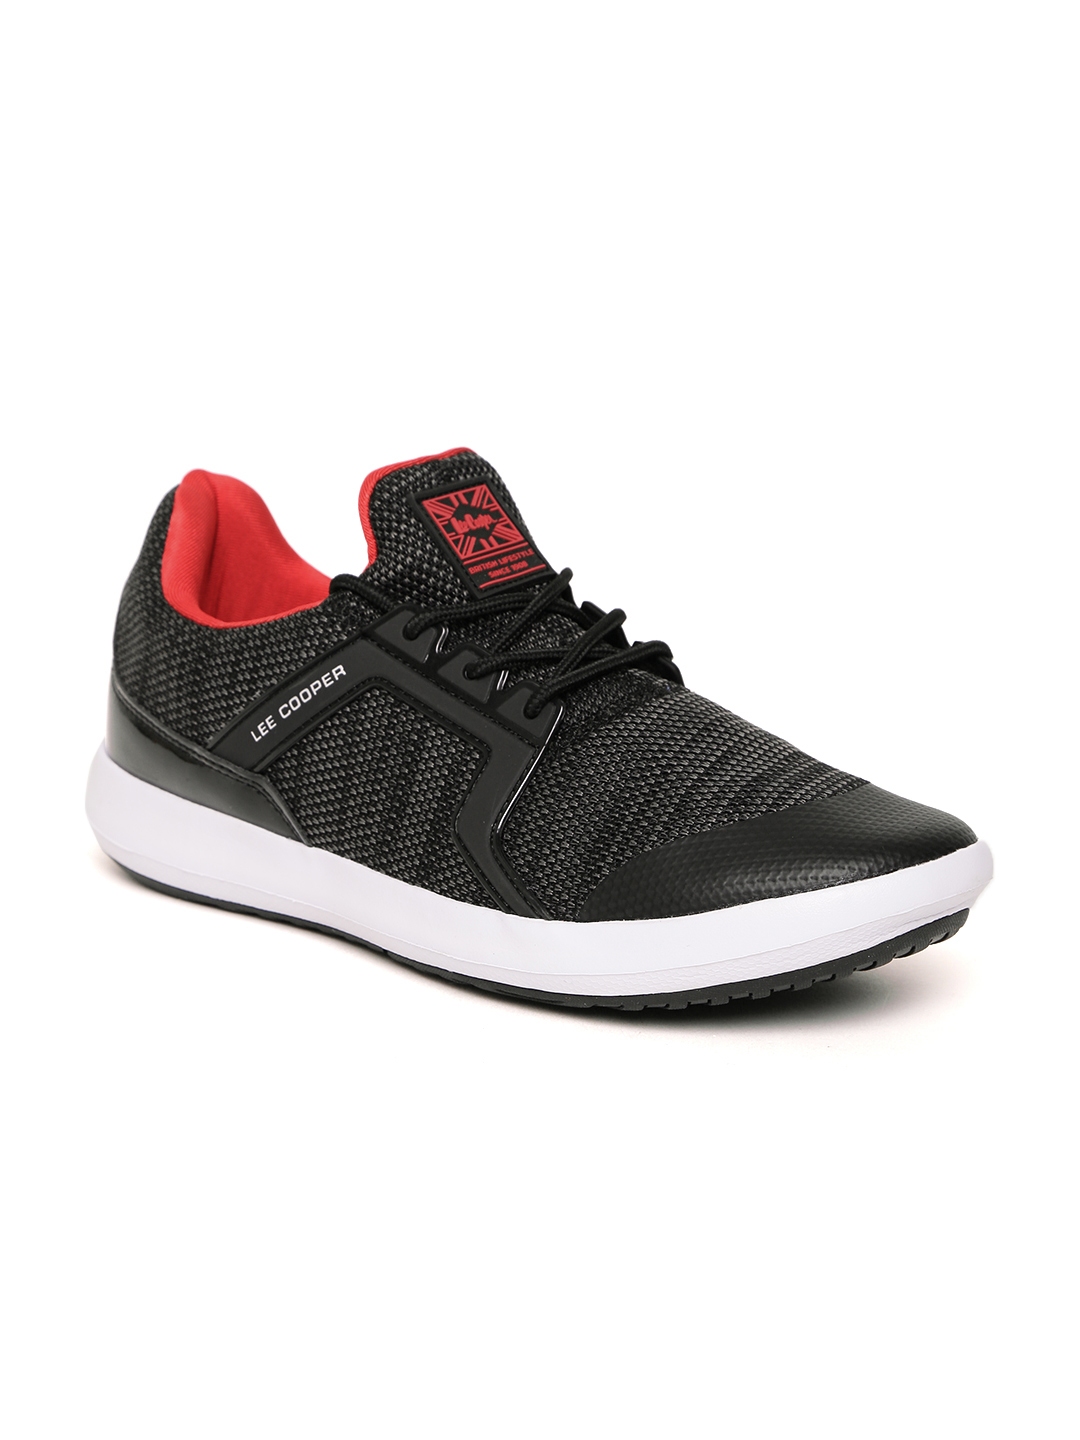 Buy Lee Cooper Men Black Walking Shoes - Sports Shoes for Men 2503282 ...